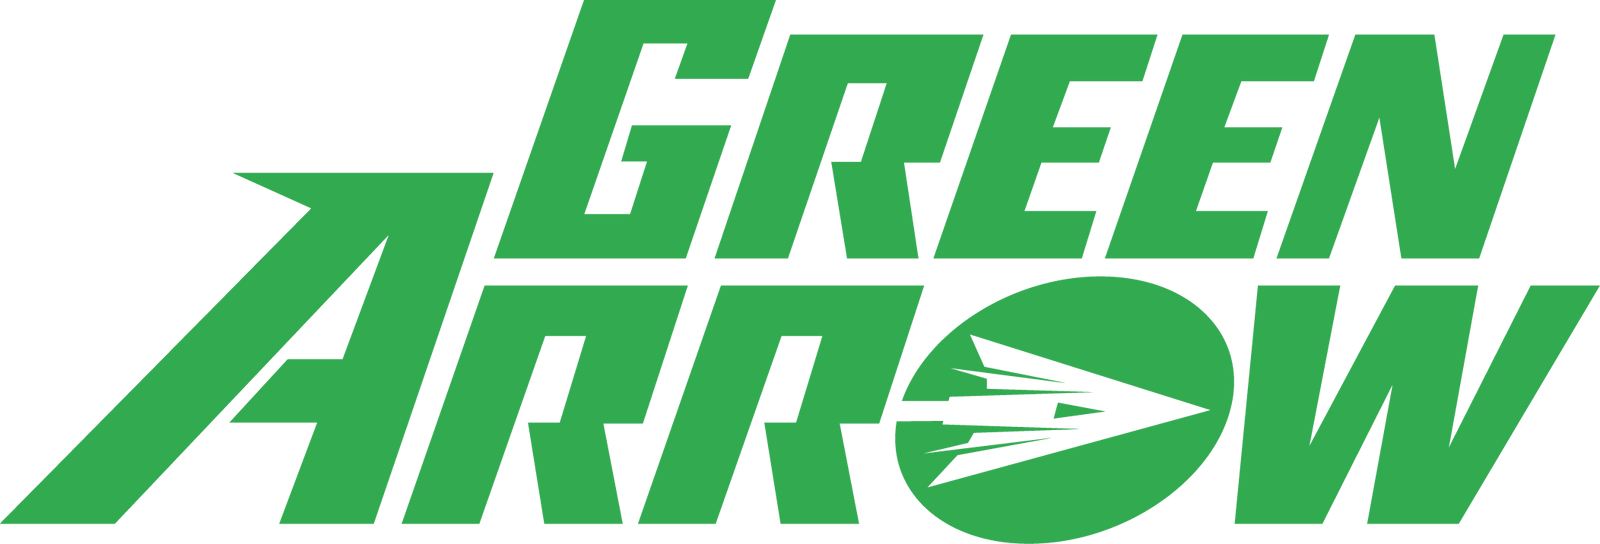 Green Arrow logo.